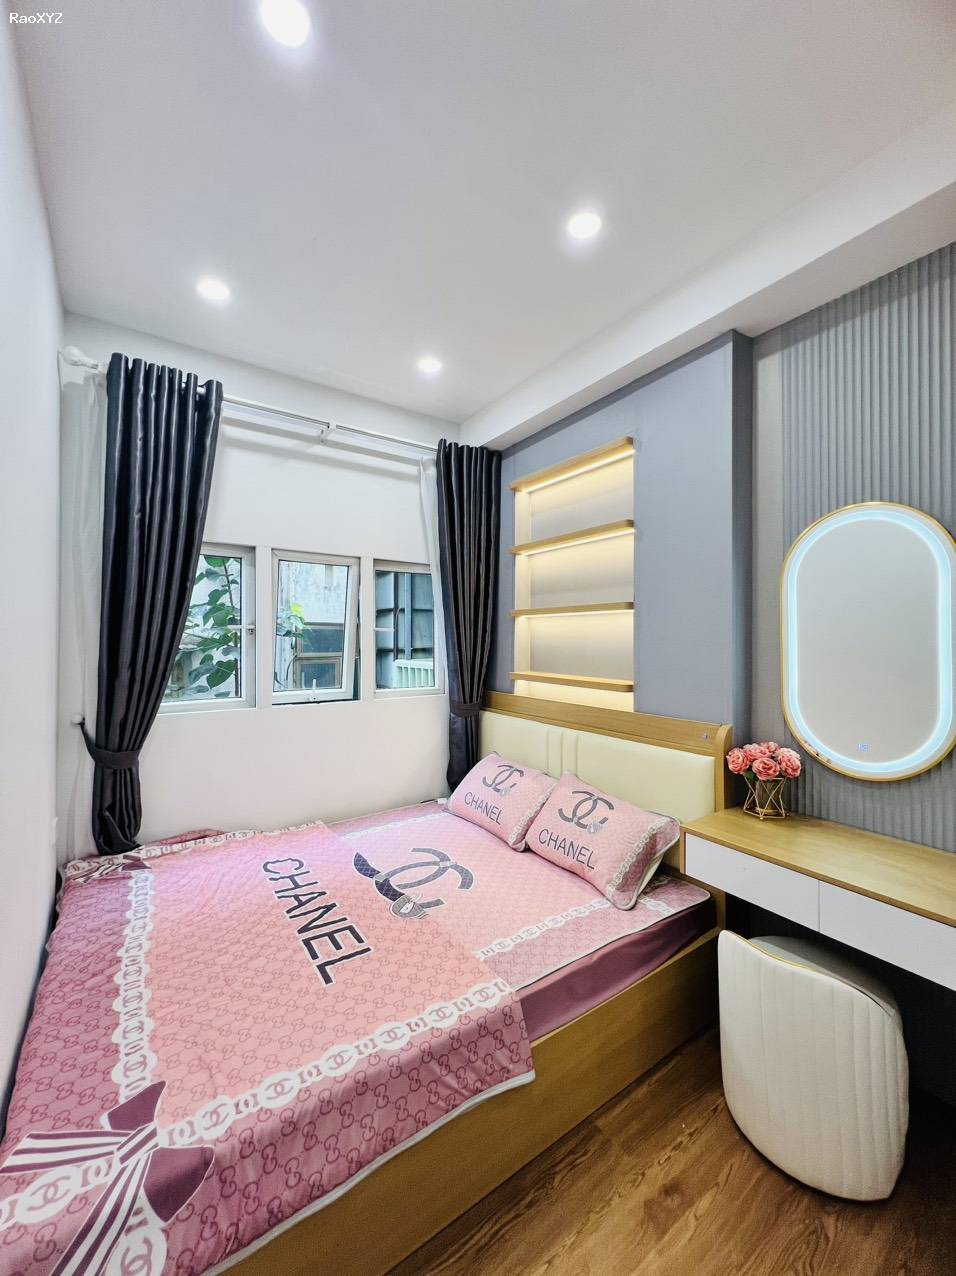 Cho thuê nhà nguyên căn trong Ngõ Khâm Thiên, Đống Đa 4tầng, 2 ngủ - Giá 16 triệu - Full nội thất đẹp như hình